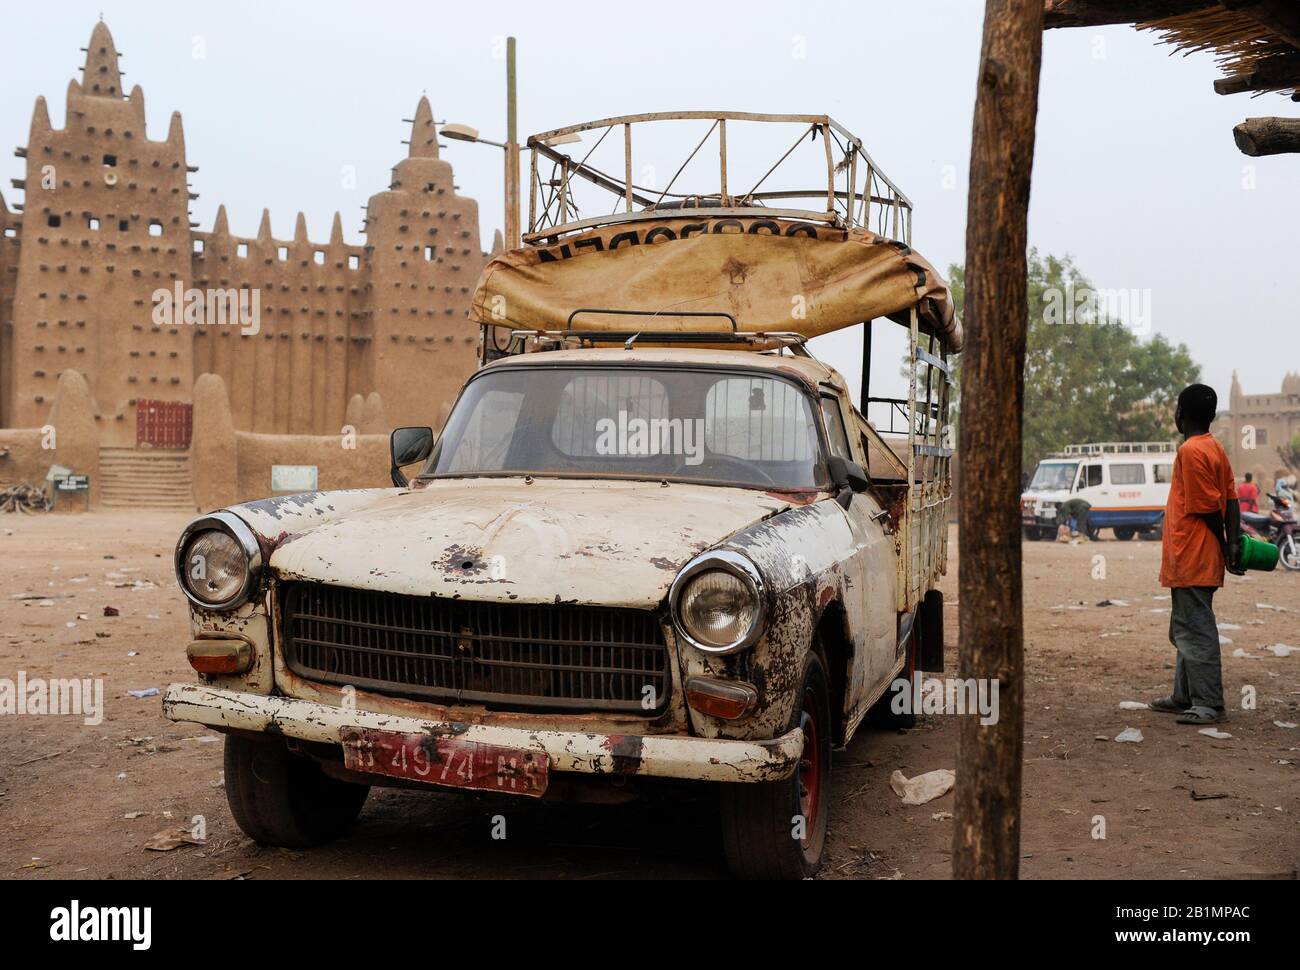 Mali, Djenne, große Moschee aus Ton ist ein UNESCO-Weltkulturerbe, alter Peugeot-Wagen / MALI, Djenne , großer Moschee Bau aus Lehm ist UNESCO Weltkulturerbe Stockfoto